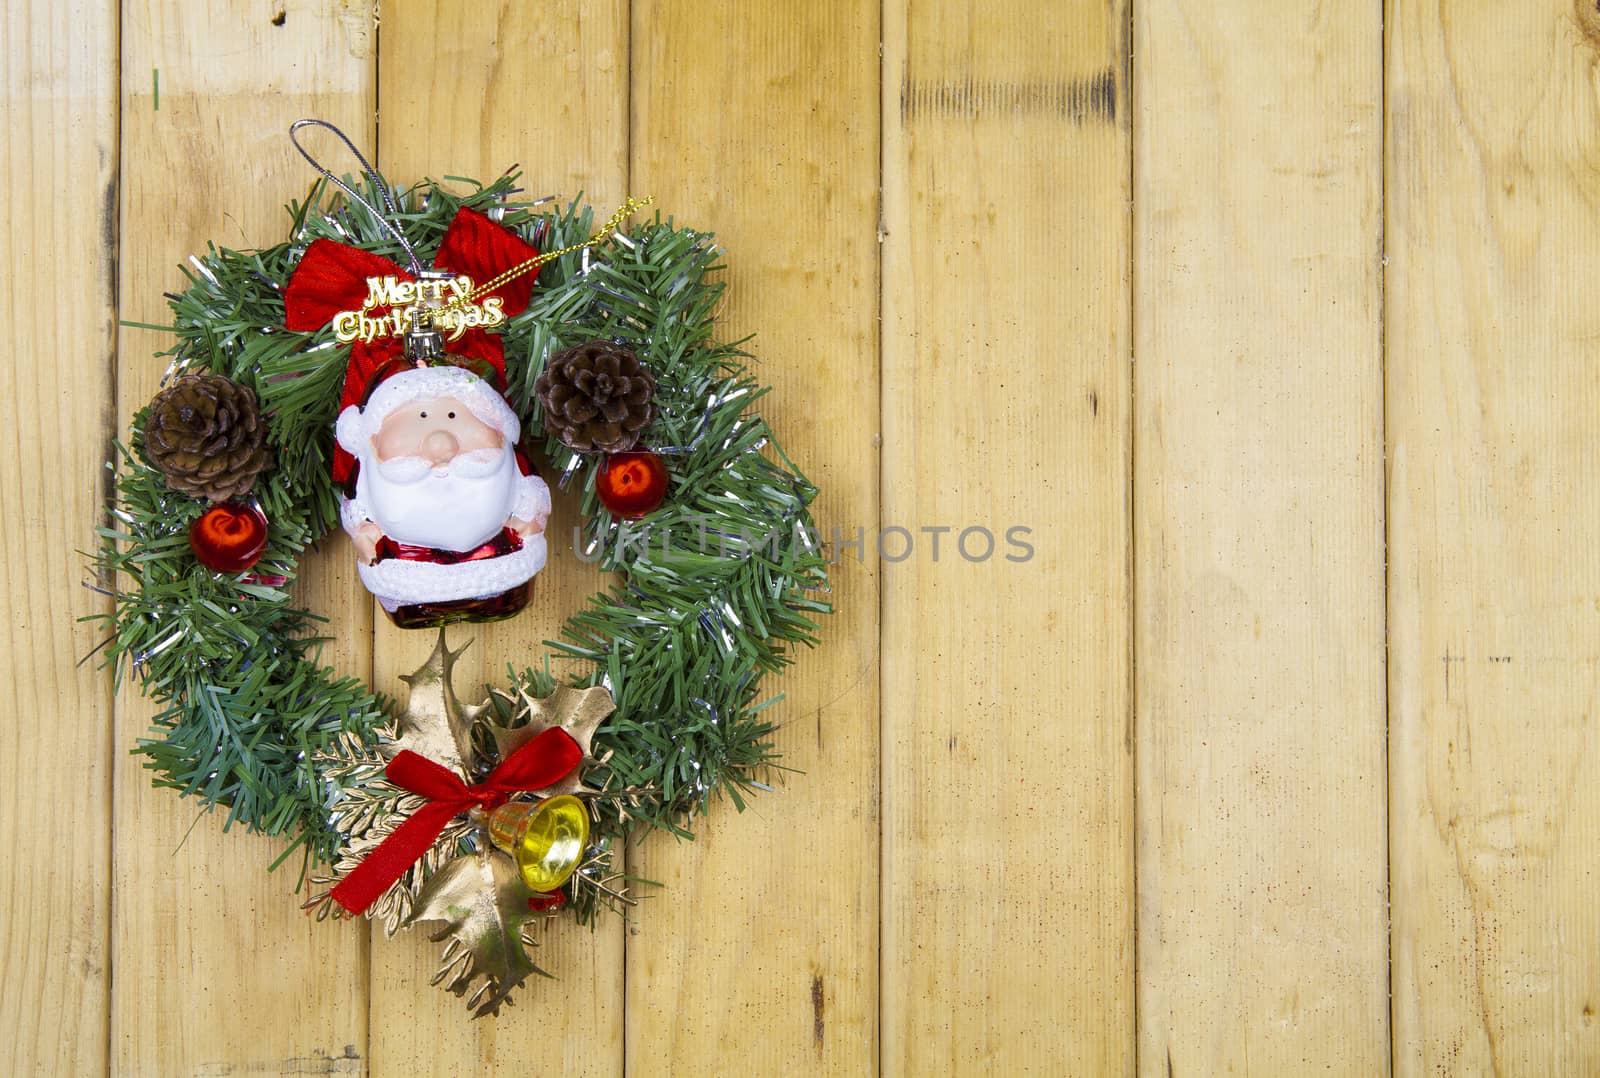 Christmas wreath by Chattranusorn09